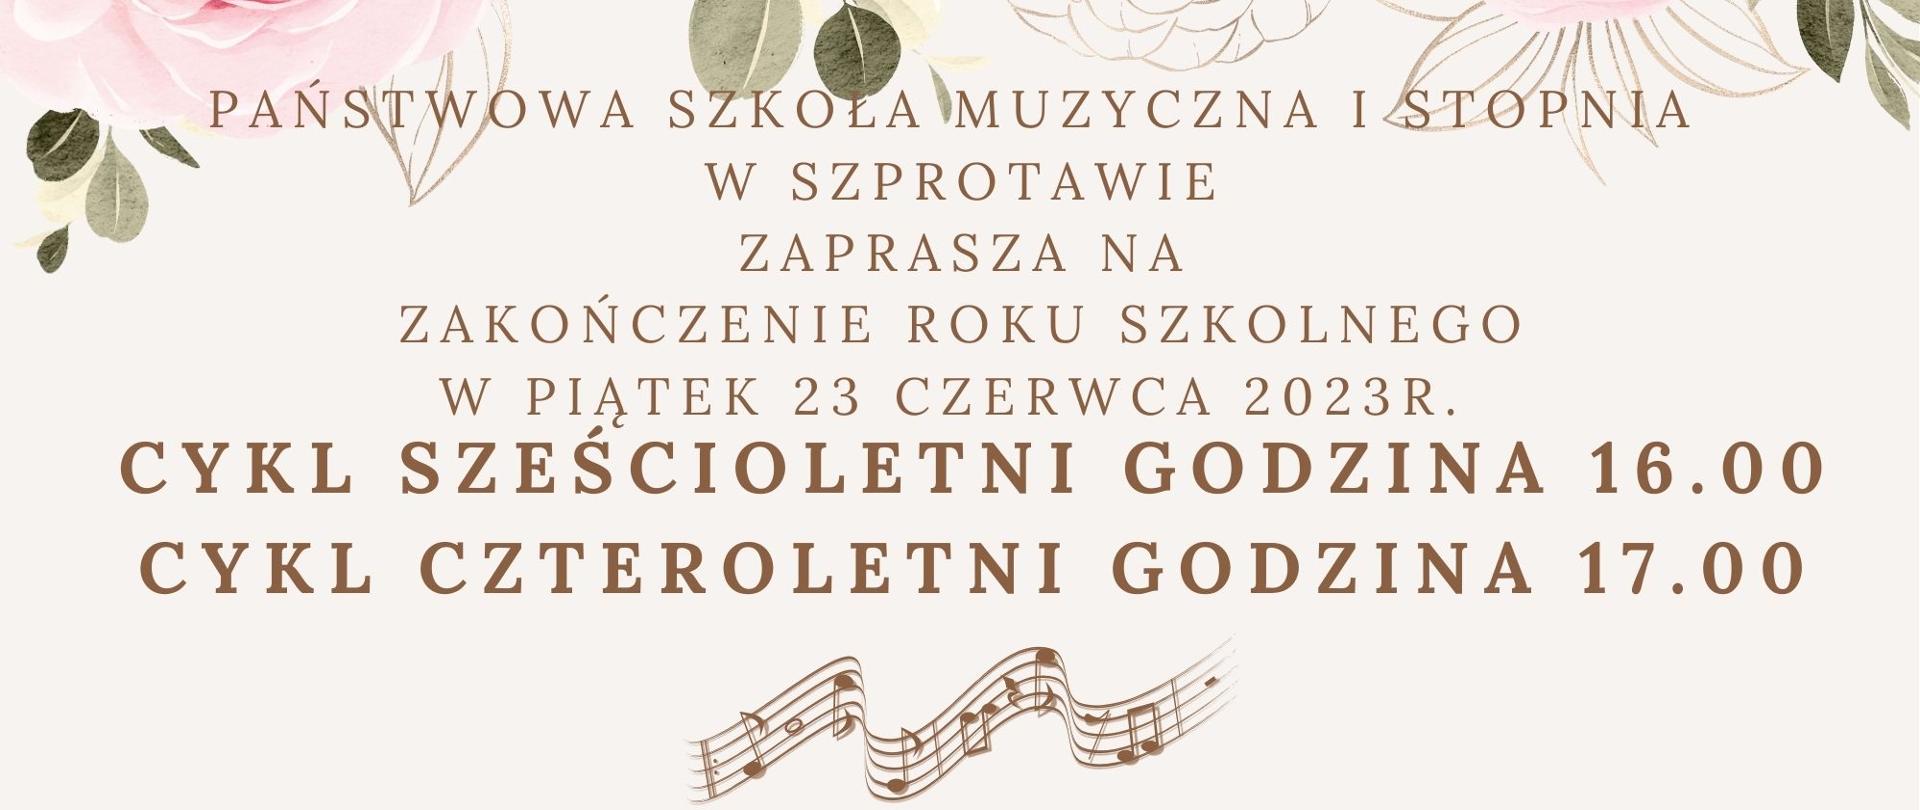 Państwowa Szkoła Muzyczna I stopnia w Szprotawie zaprasza na zakończenie roku szkolnego w piątek 23 czerwca 2023r. Cykl sześcioletni godzina 16.00, cykl czteroletni godzina 17.00.